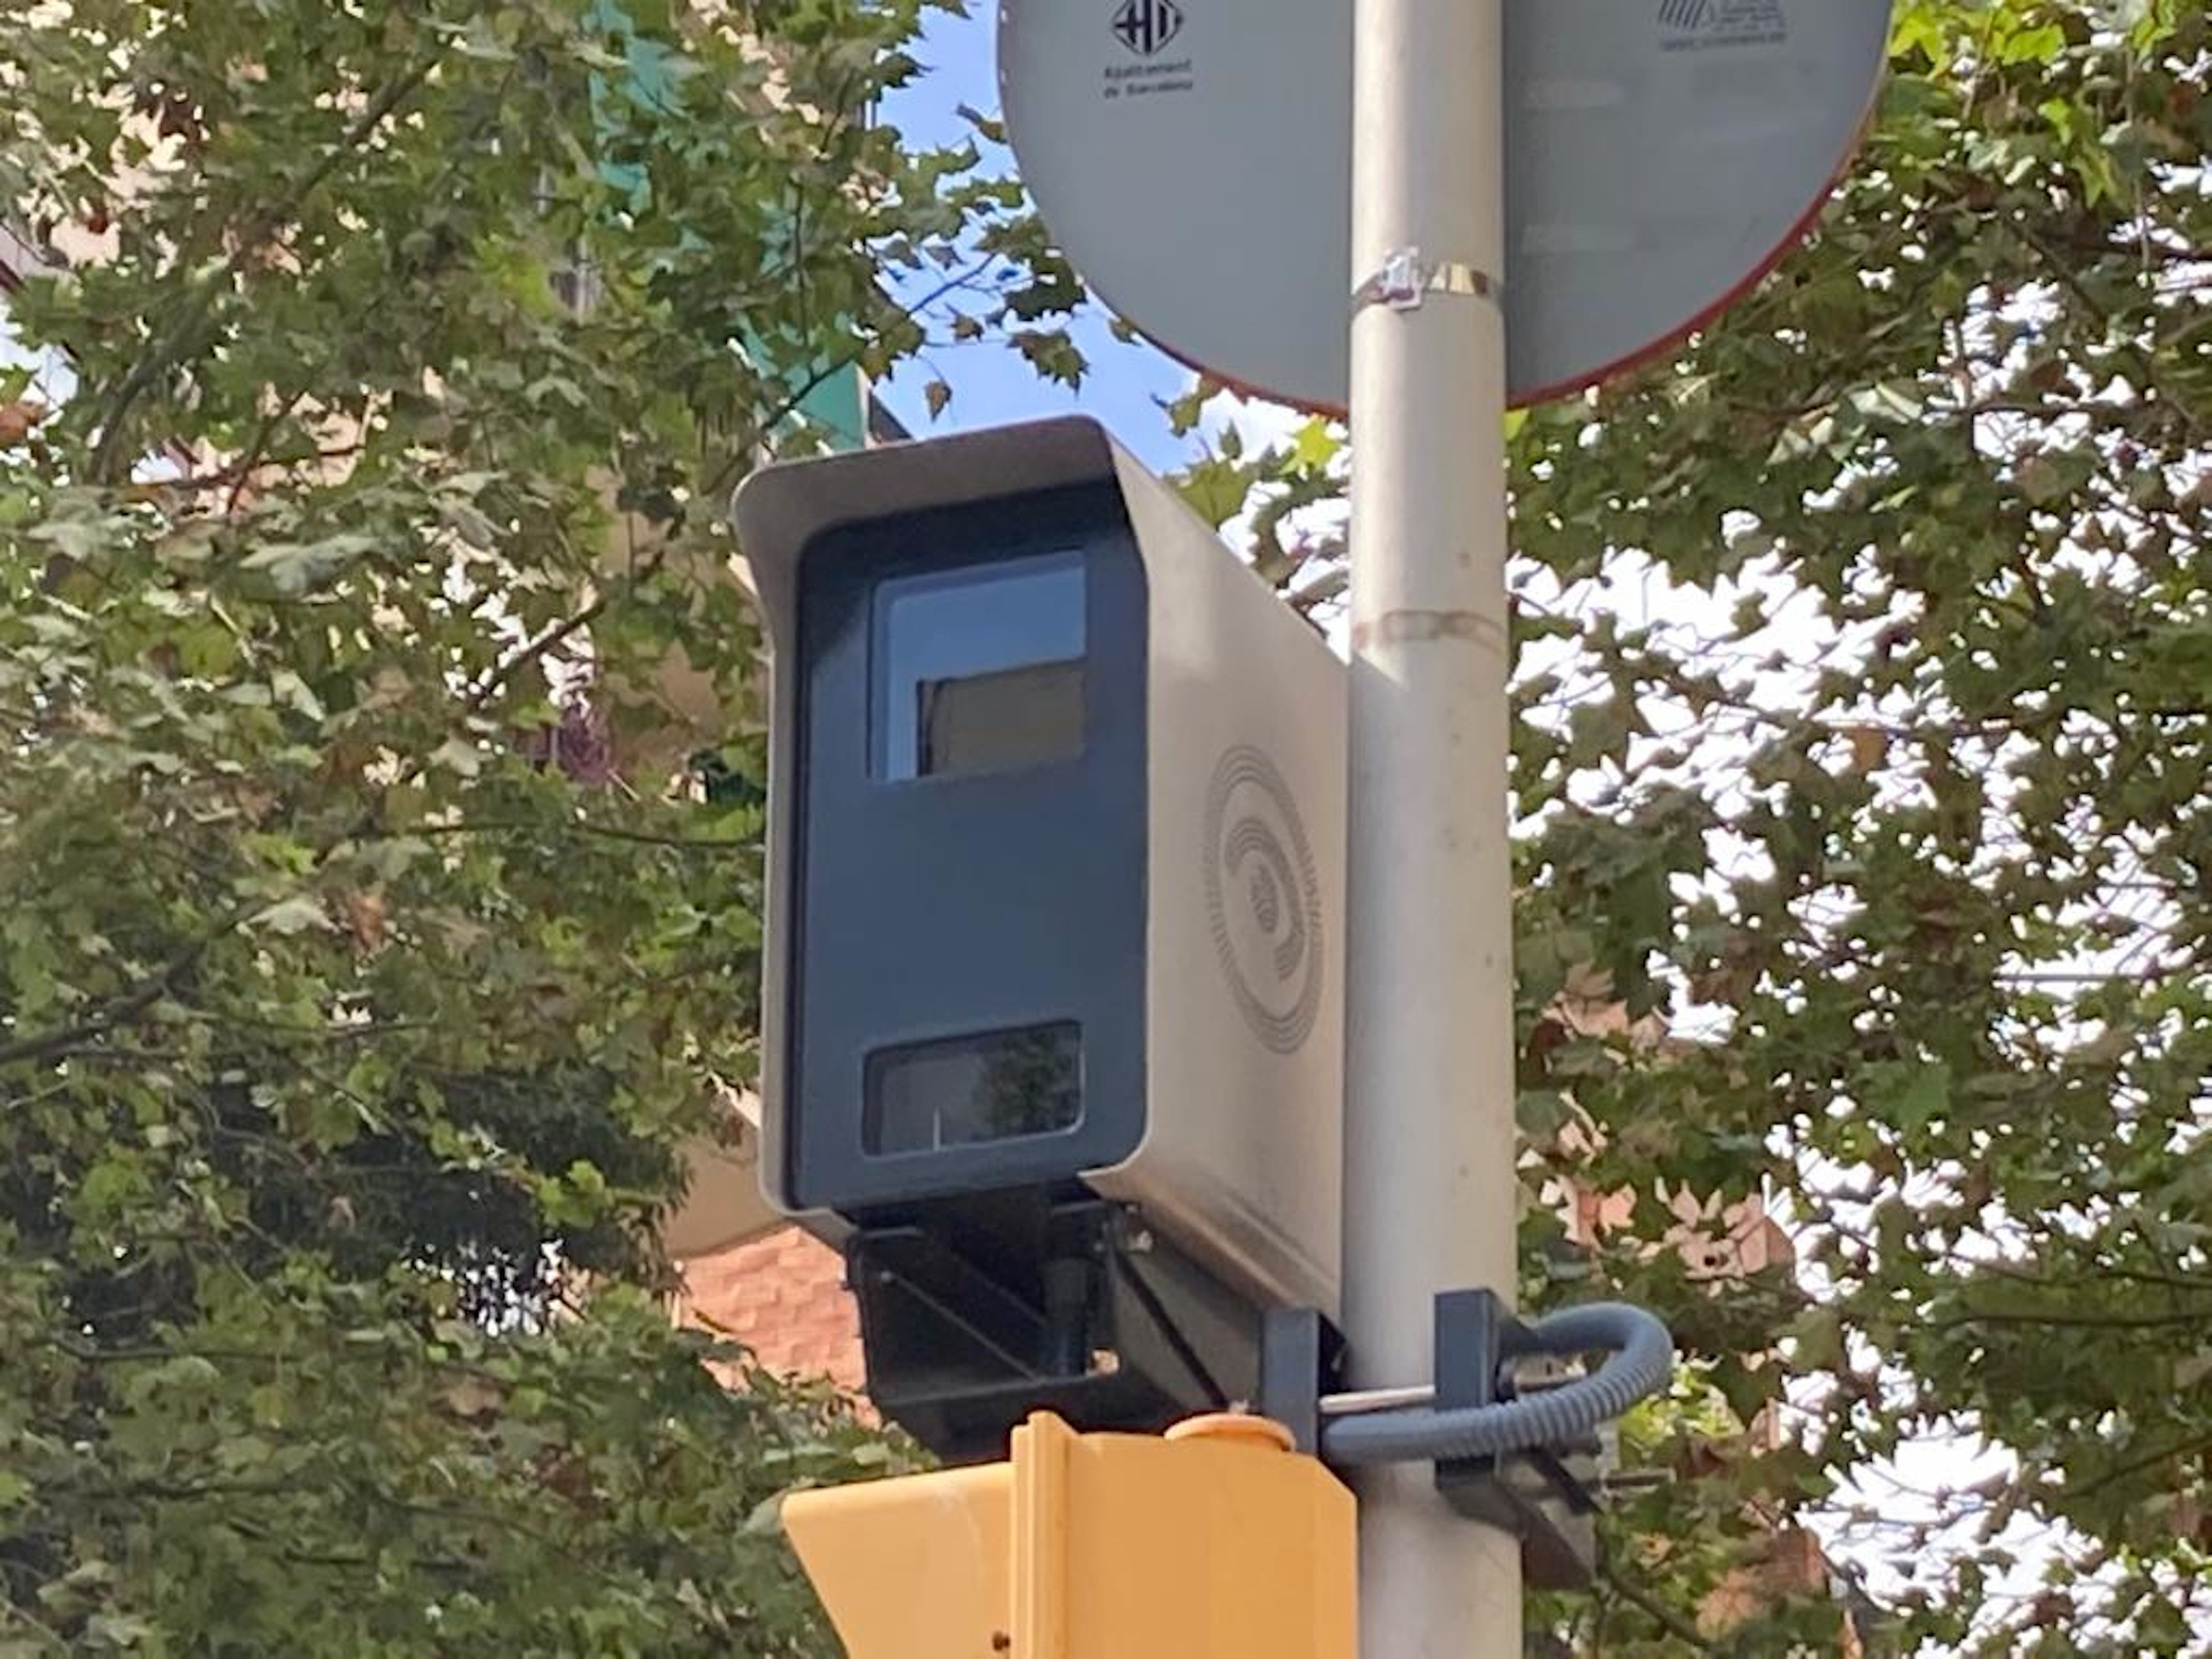 Los nuevos radares de Barcelona multan a un ritmo de casi 700 multas al día